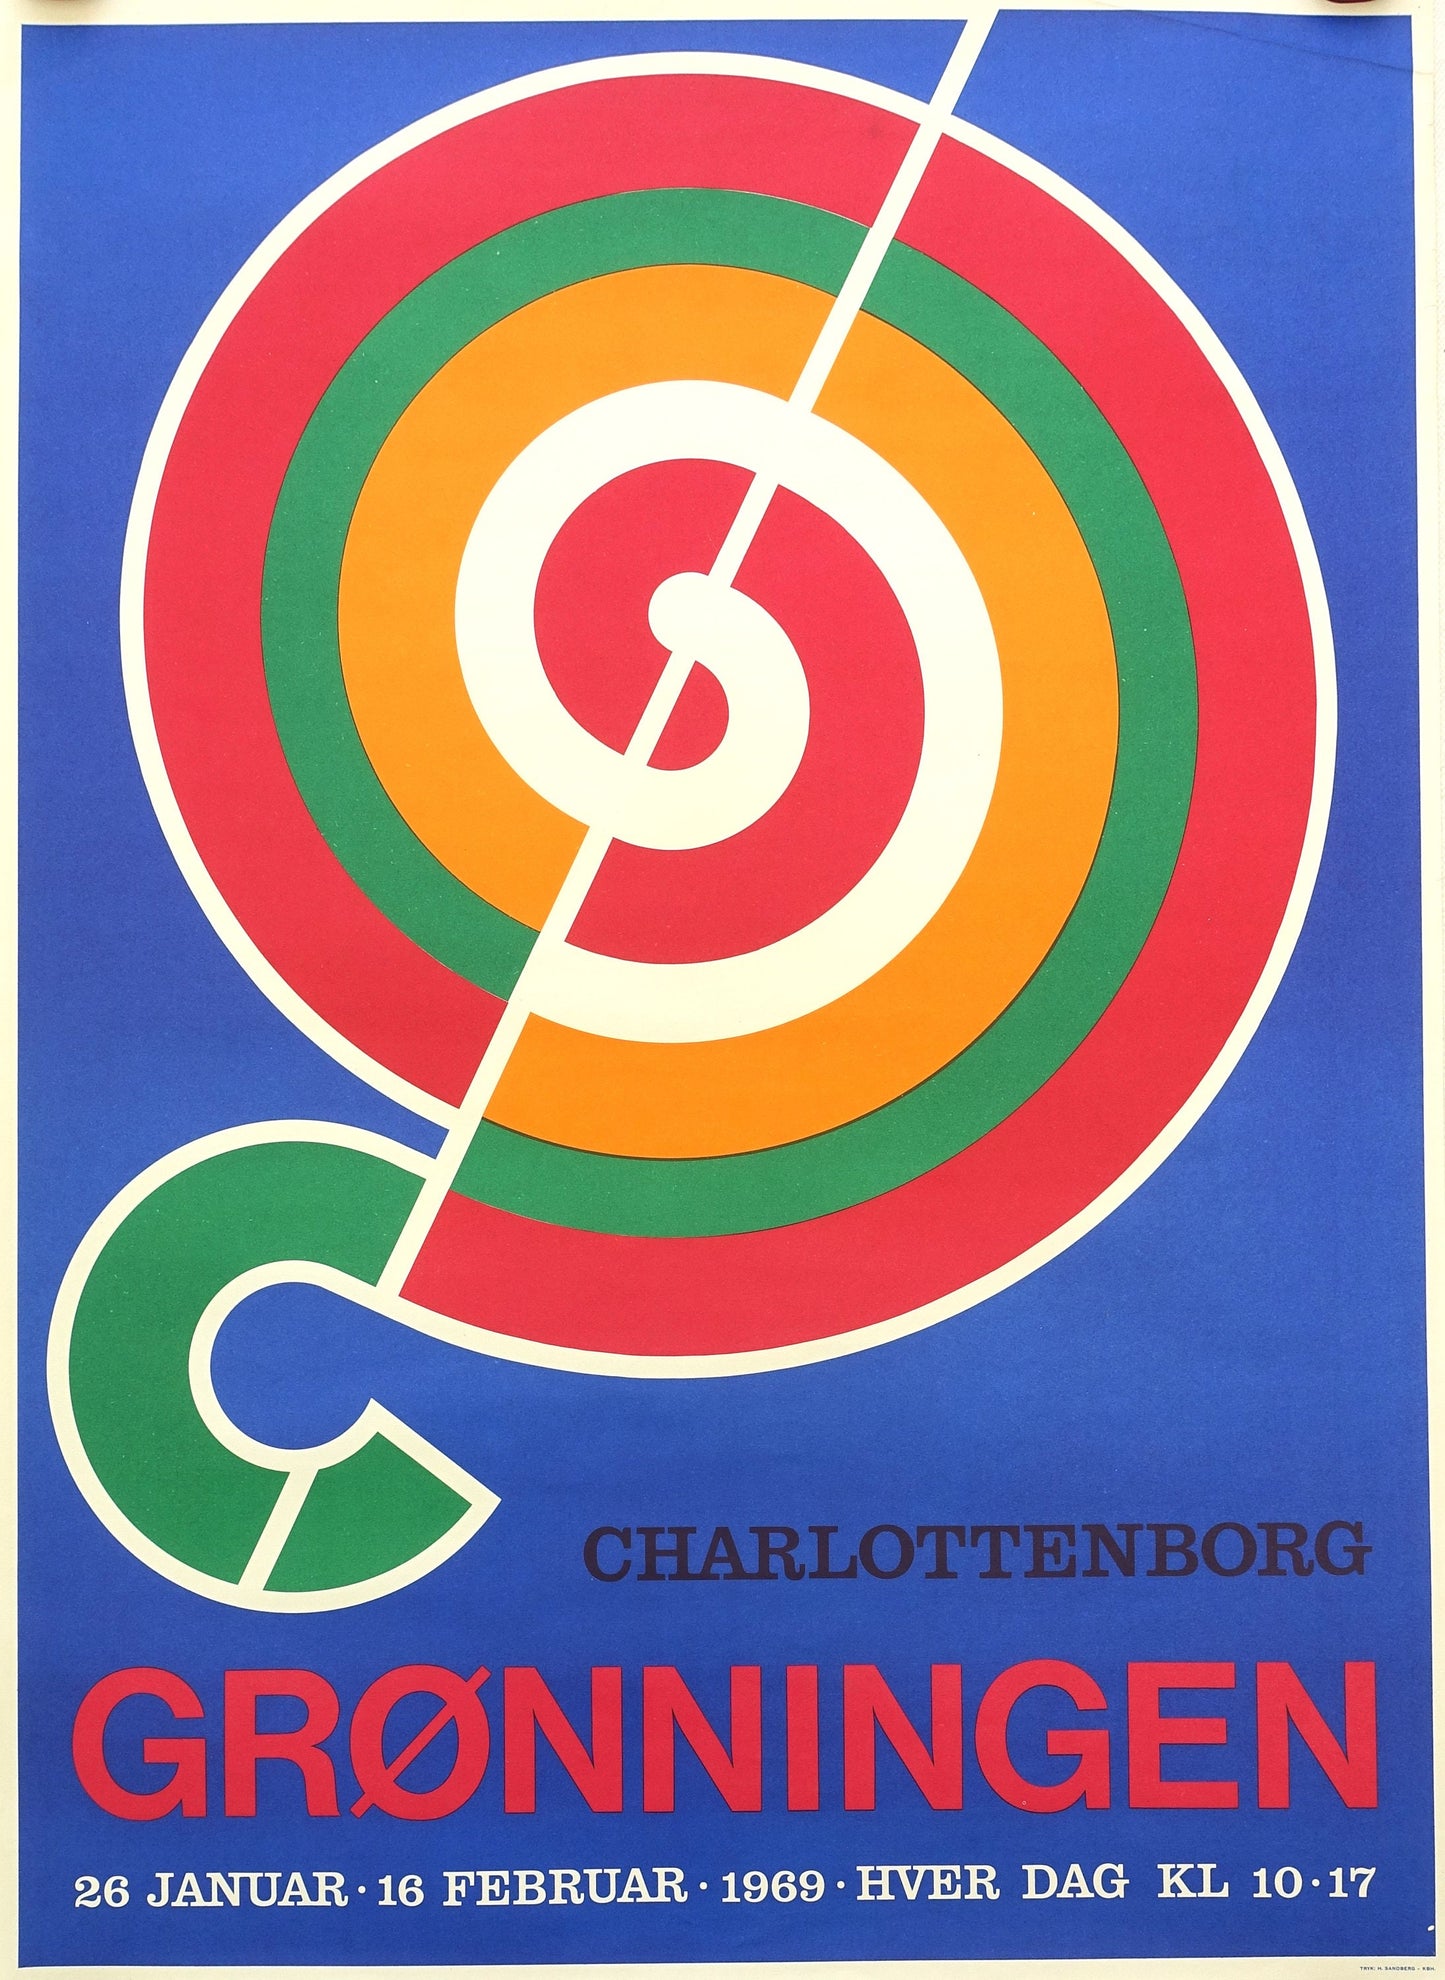 1969 Danish Modernist Design by Henning Damgård Sørensen Poster - Original Vintage Poster